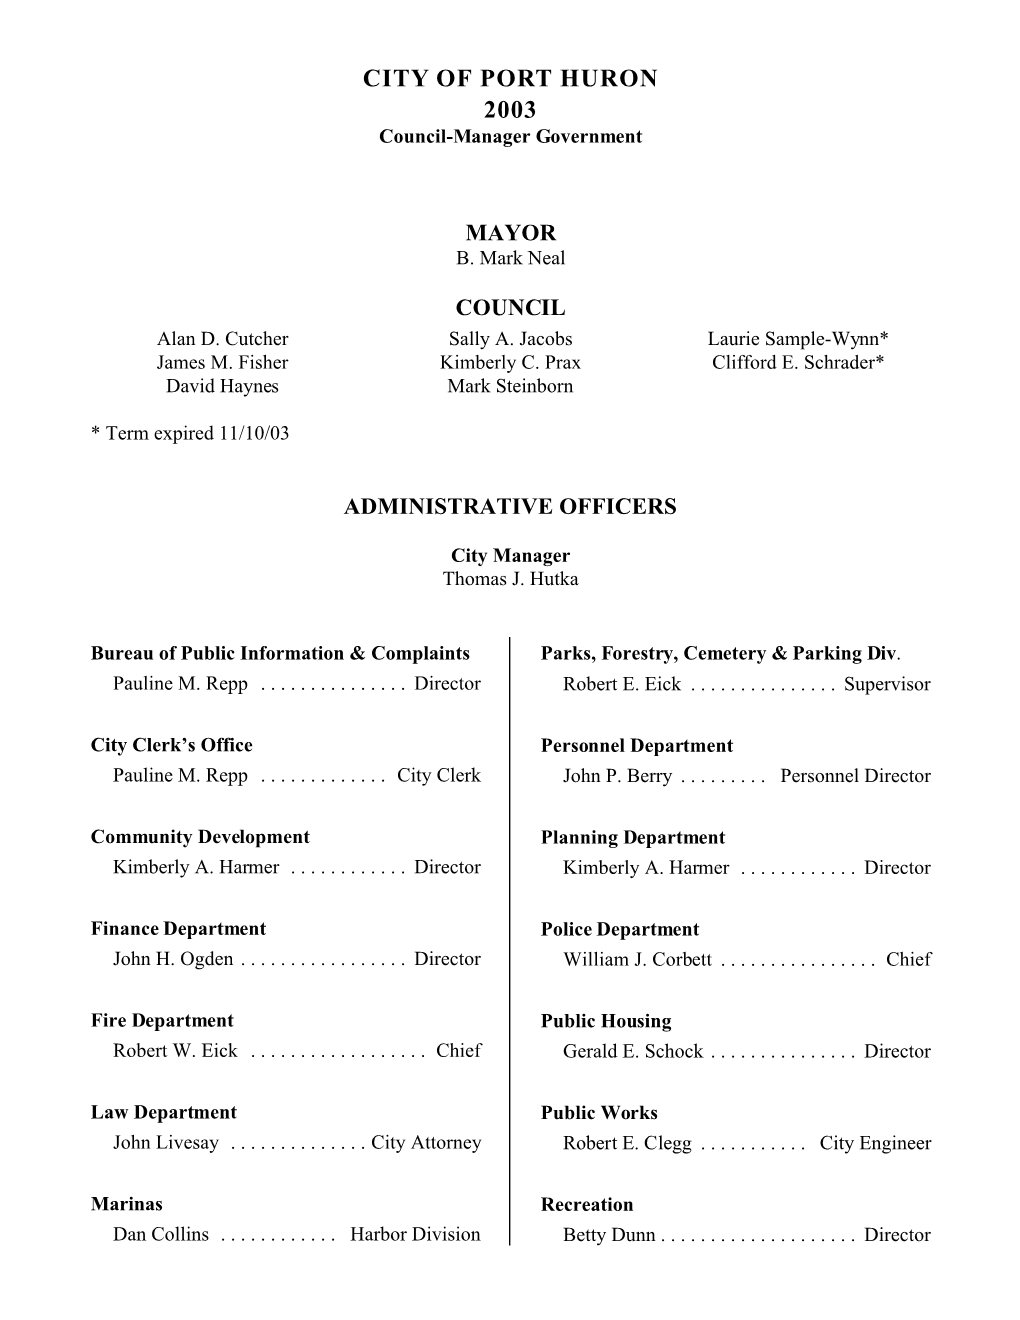 Council Minutes 2003